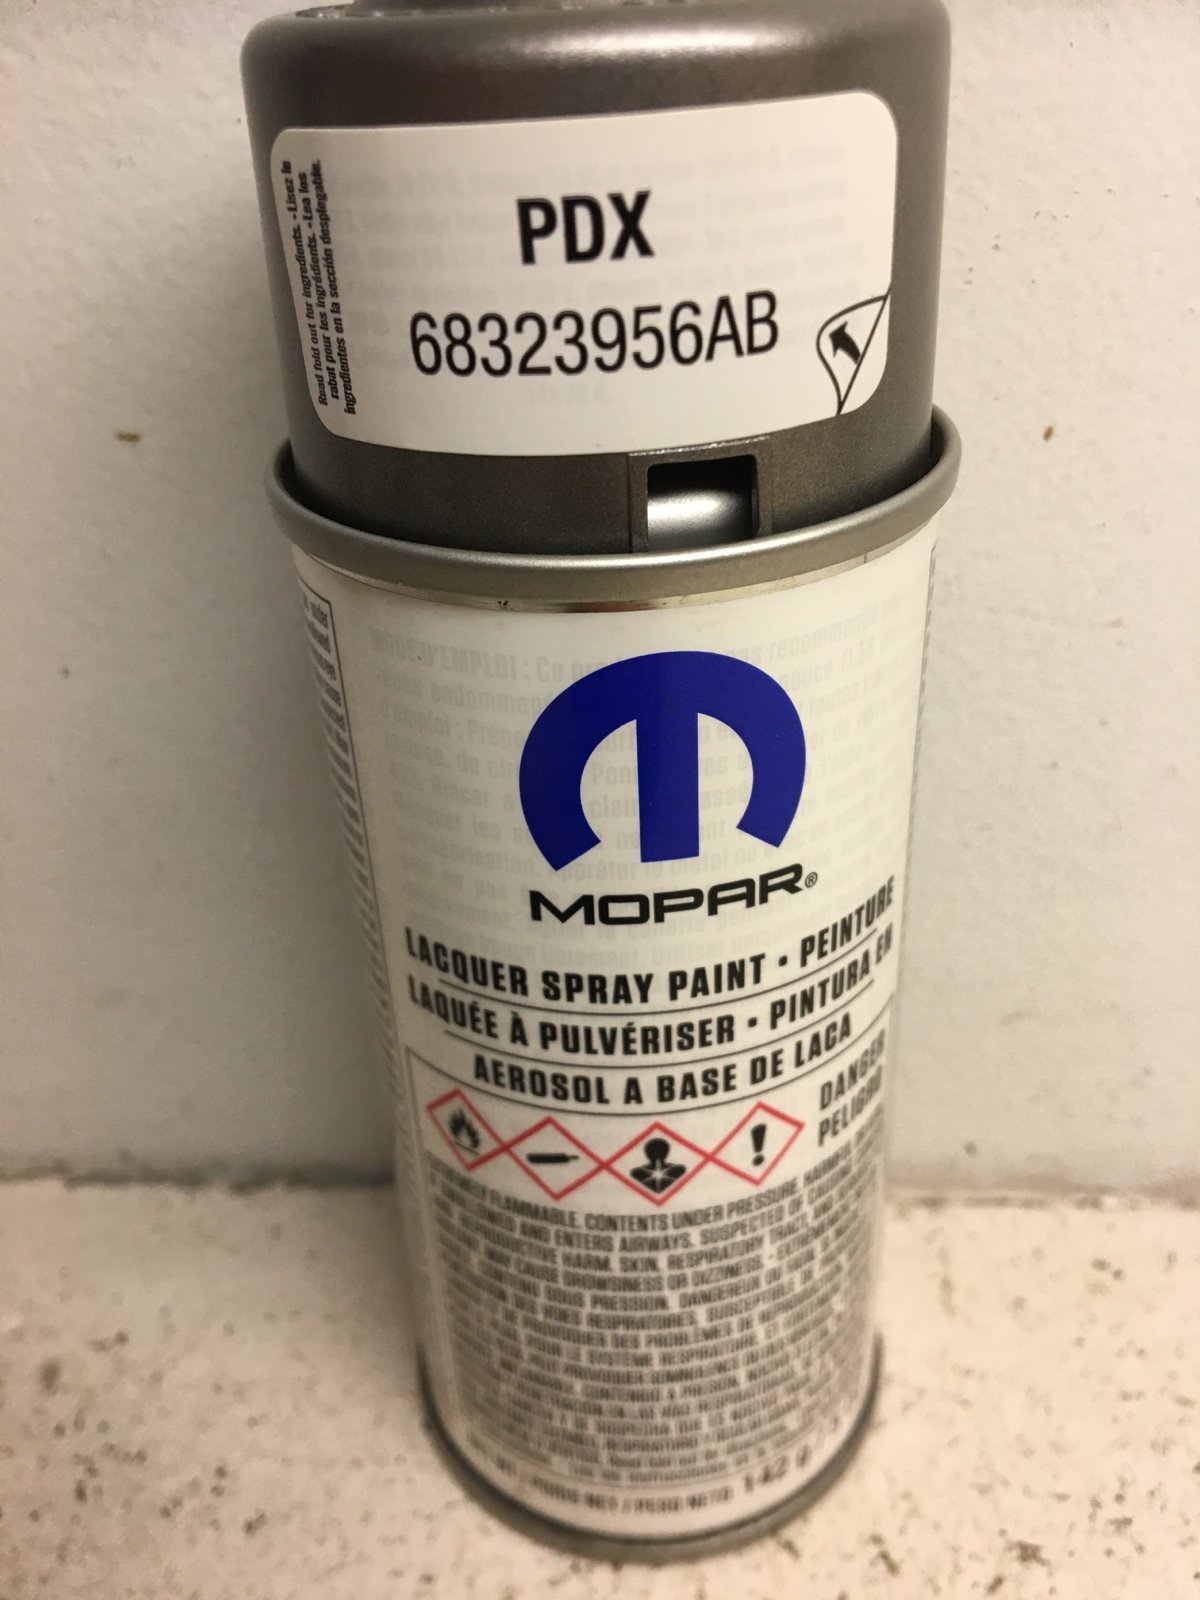 Mopar PDX factory touch up spray paint i21dzDK9G